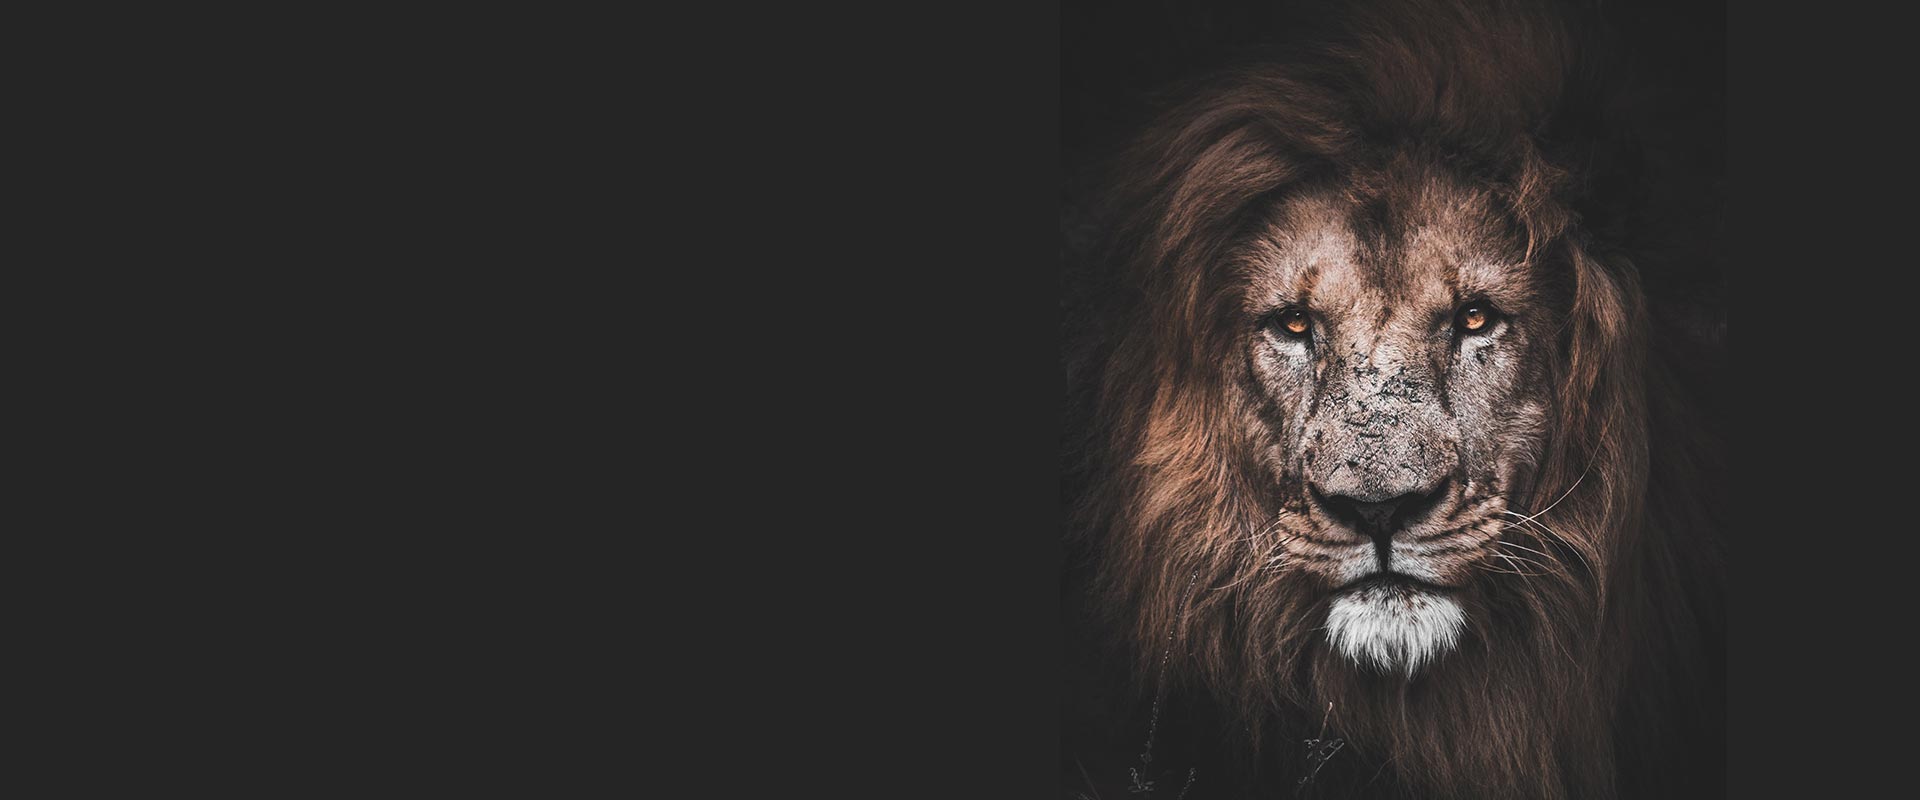 Hình cover facebook sư tử đẹp